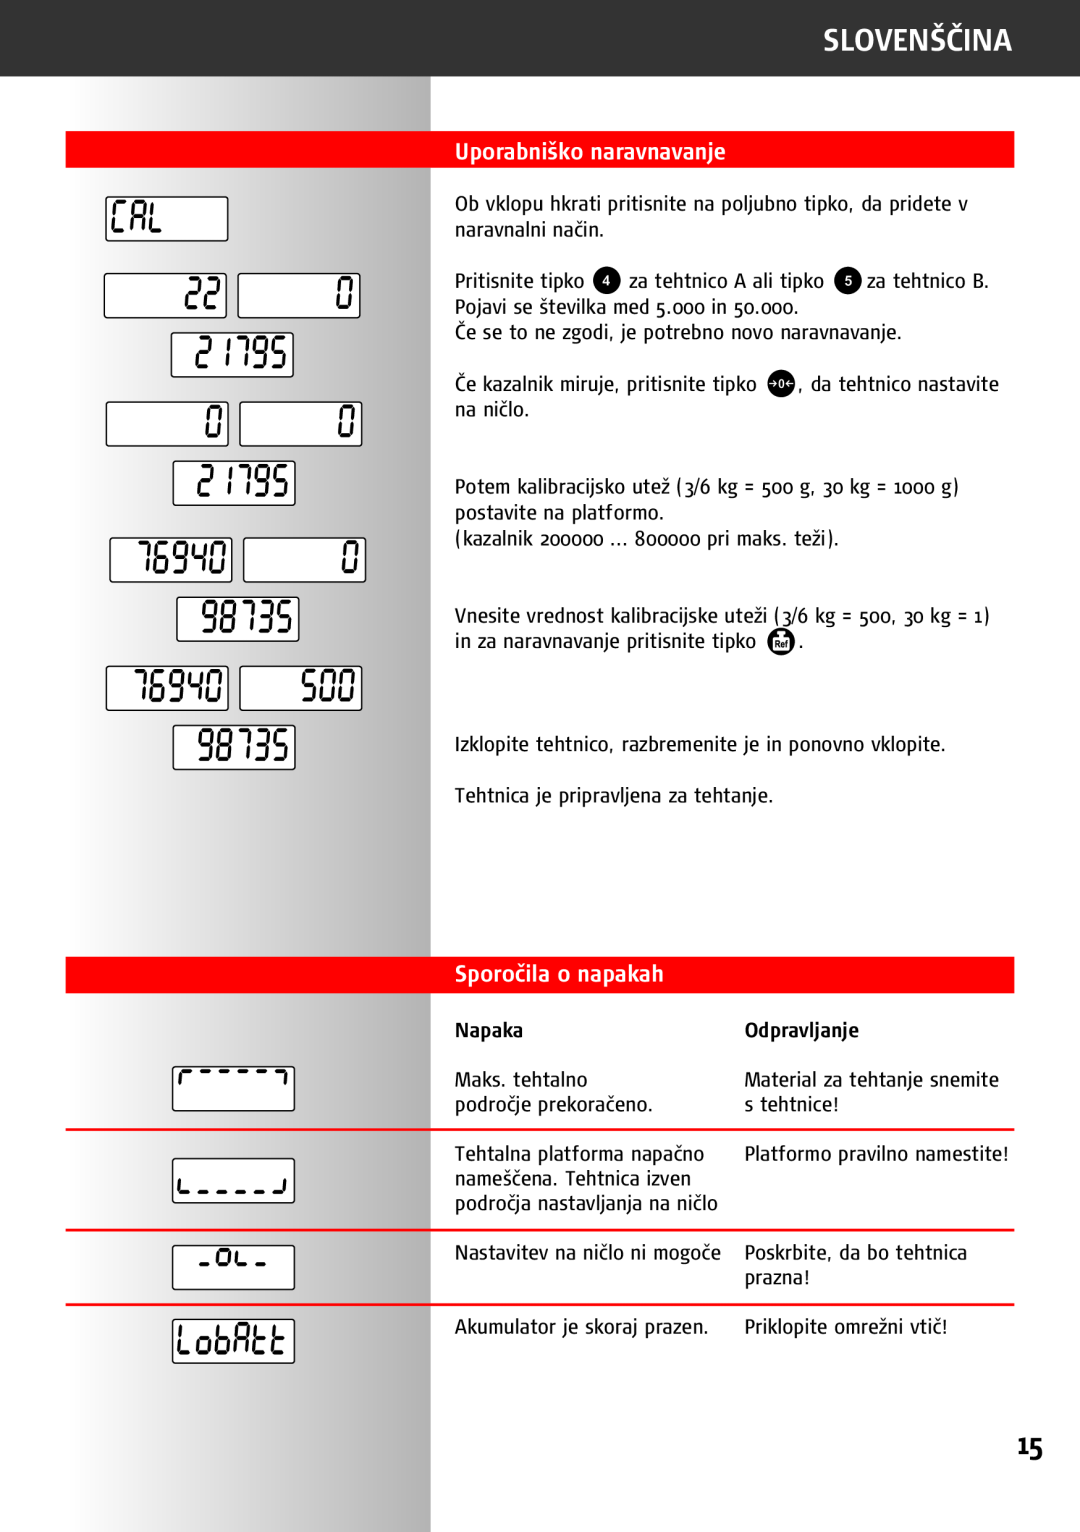 Soehnle 9220 manual Uporabniško naravnavanje, Sporočila o napakah, Slovenščina, Napaka, Odpravljanje 